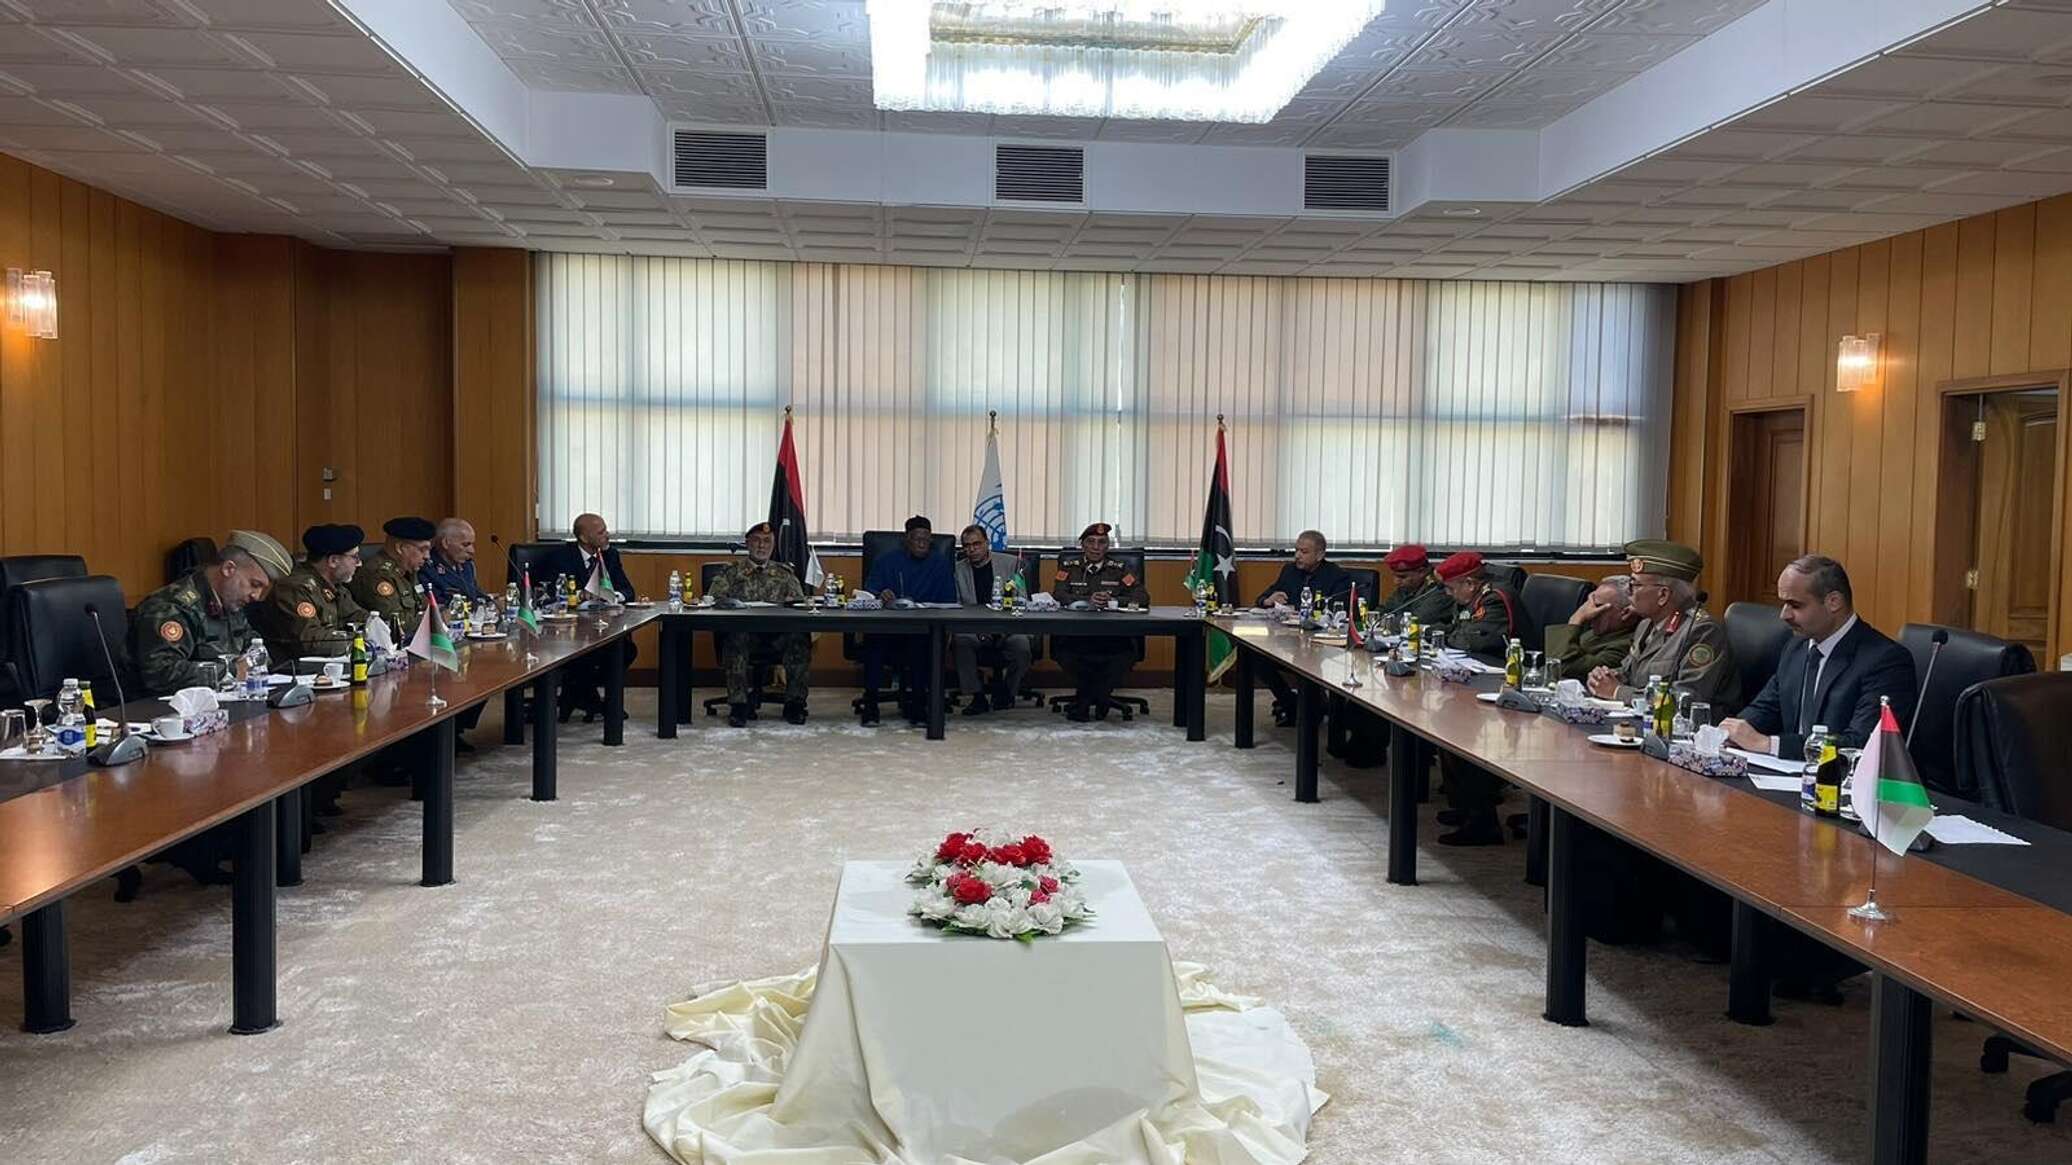 الأمم المتحدة تدعو إلى وضع جدول زمني واضح للانتخابات الليبية